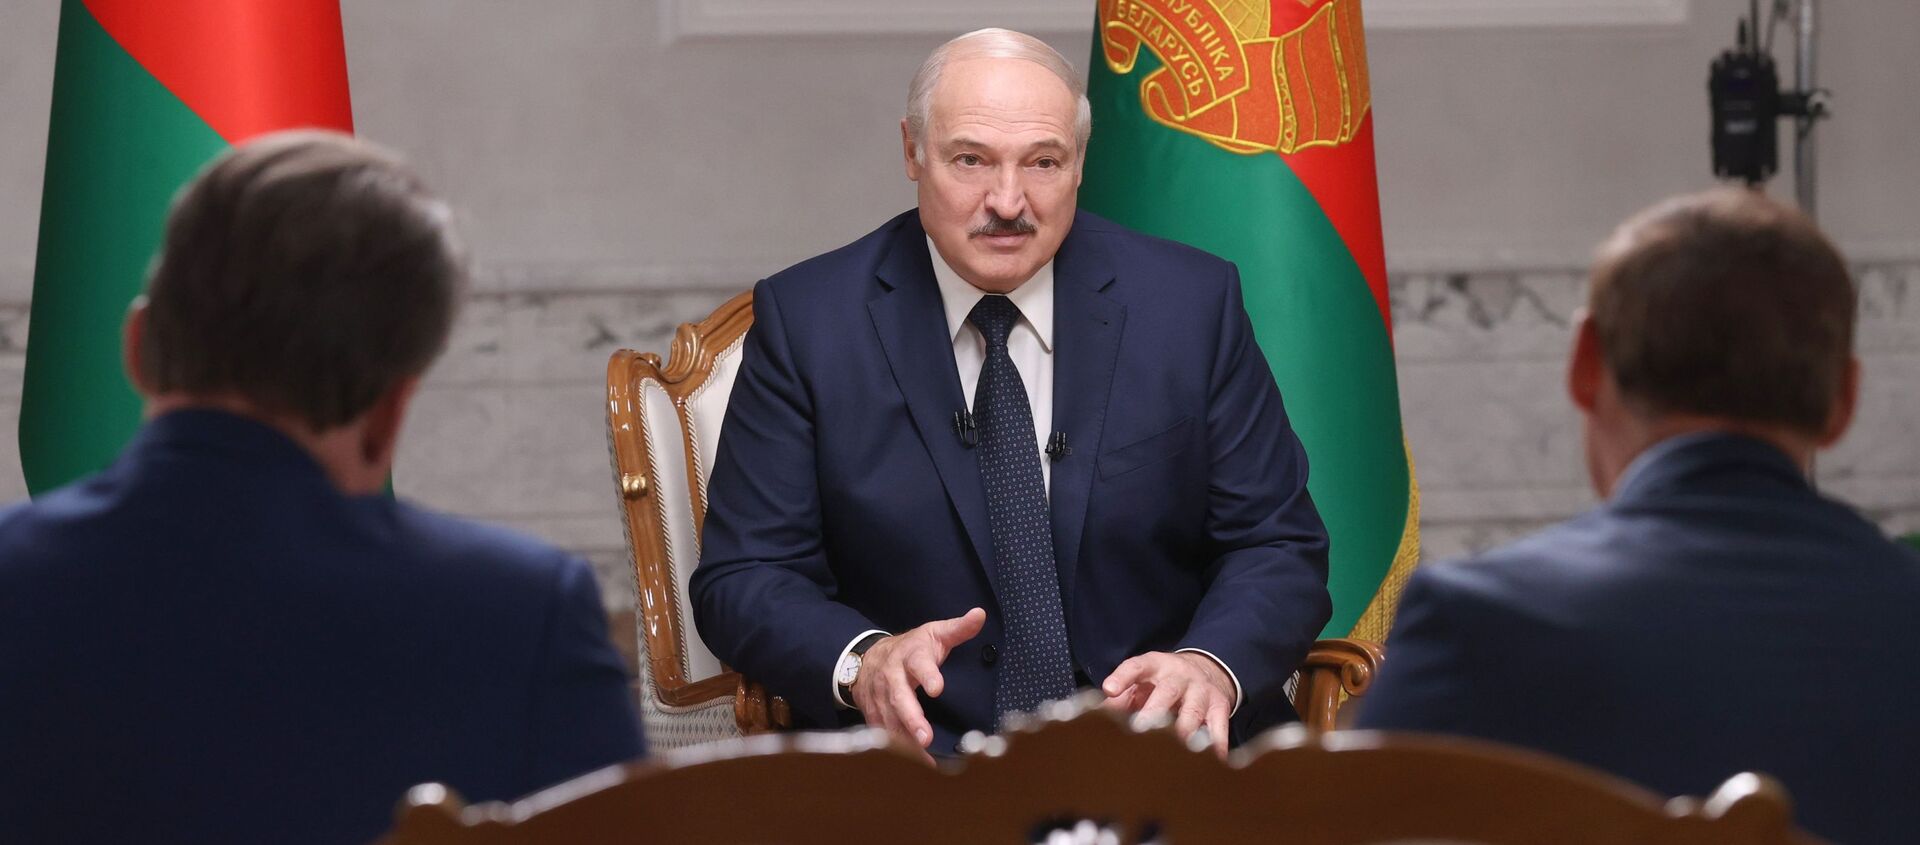 Президент Белоруссии А. Лукашенко дал интервью российским журналистам - Sputnik Грузия, 1920, 02.07.2021